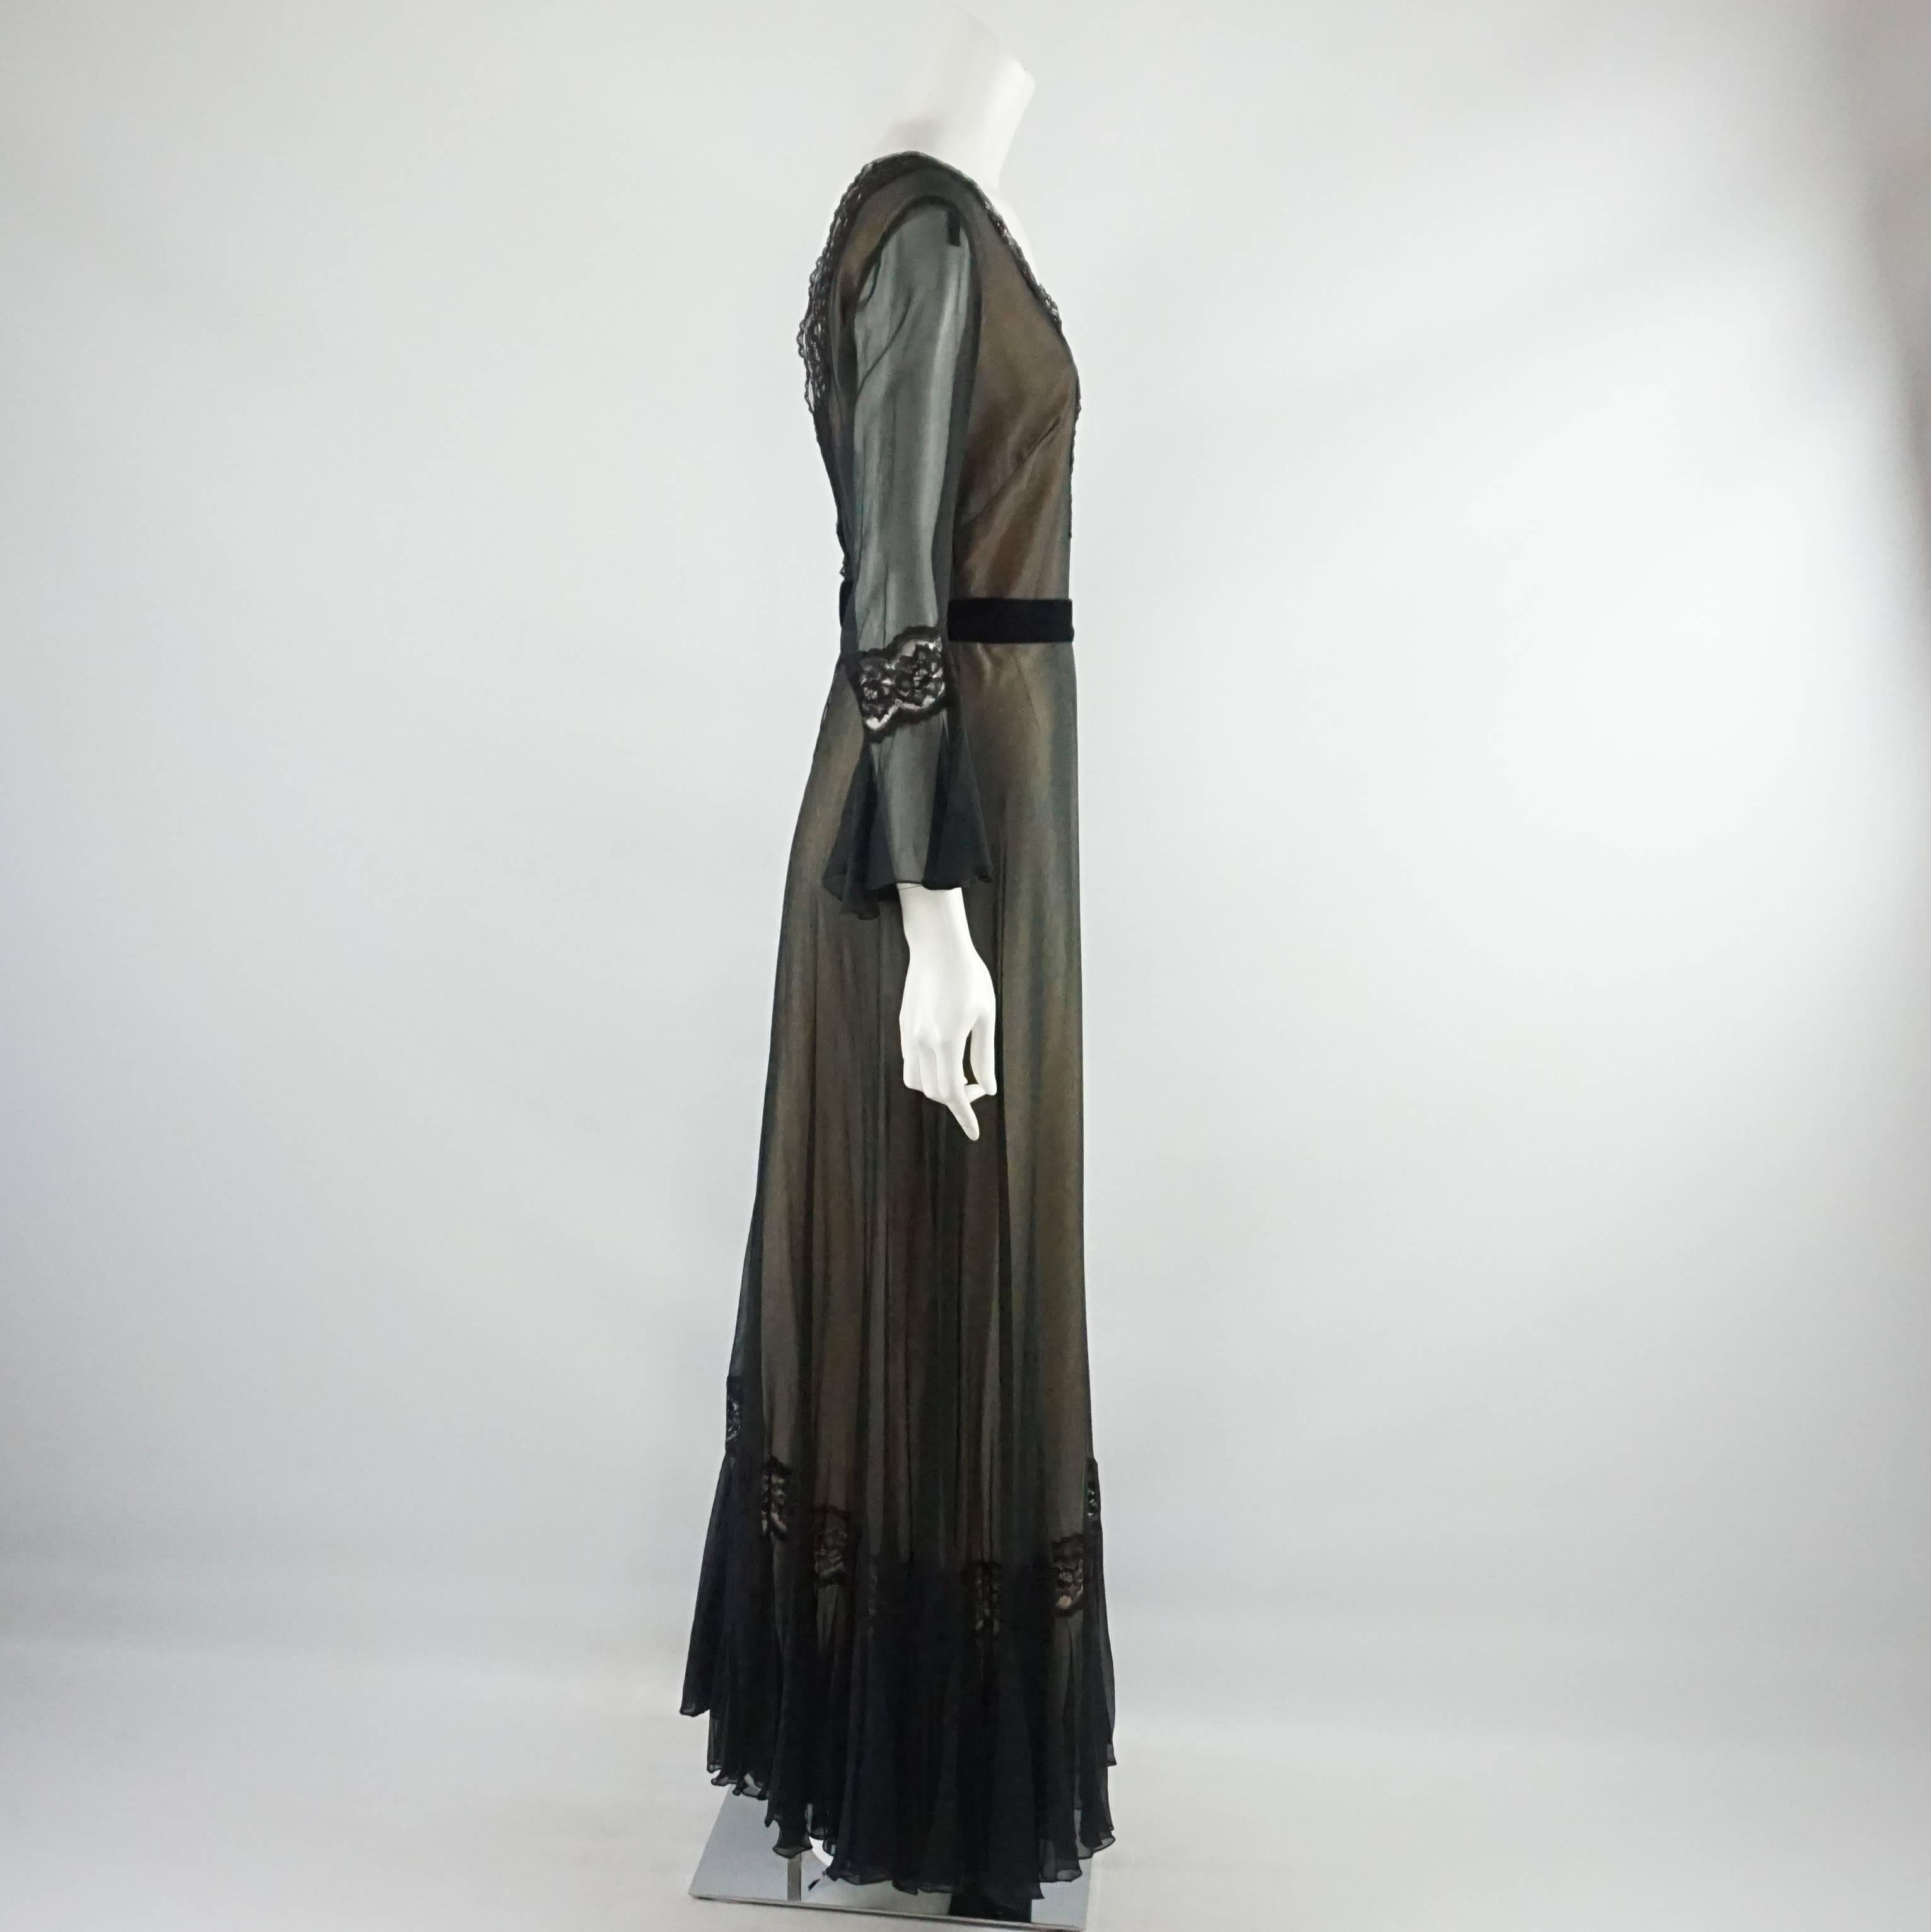 Dieses Kleid von Jean Allen hat lange Ärmel und einen V-Ausschnitt. Es ist aus Seide und hat einen Spitzenbesatz am Hals und durchsichtige Ärmel. Es hat ein Taillenband und Spitzenverzierungen an den Ärmeln. Dieses Kleid ist in ausgezeichnetem